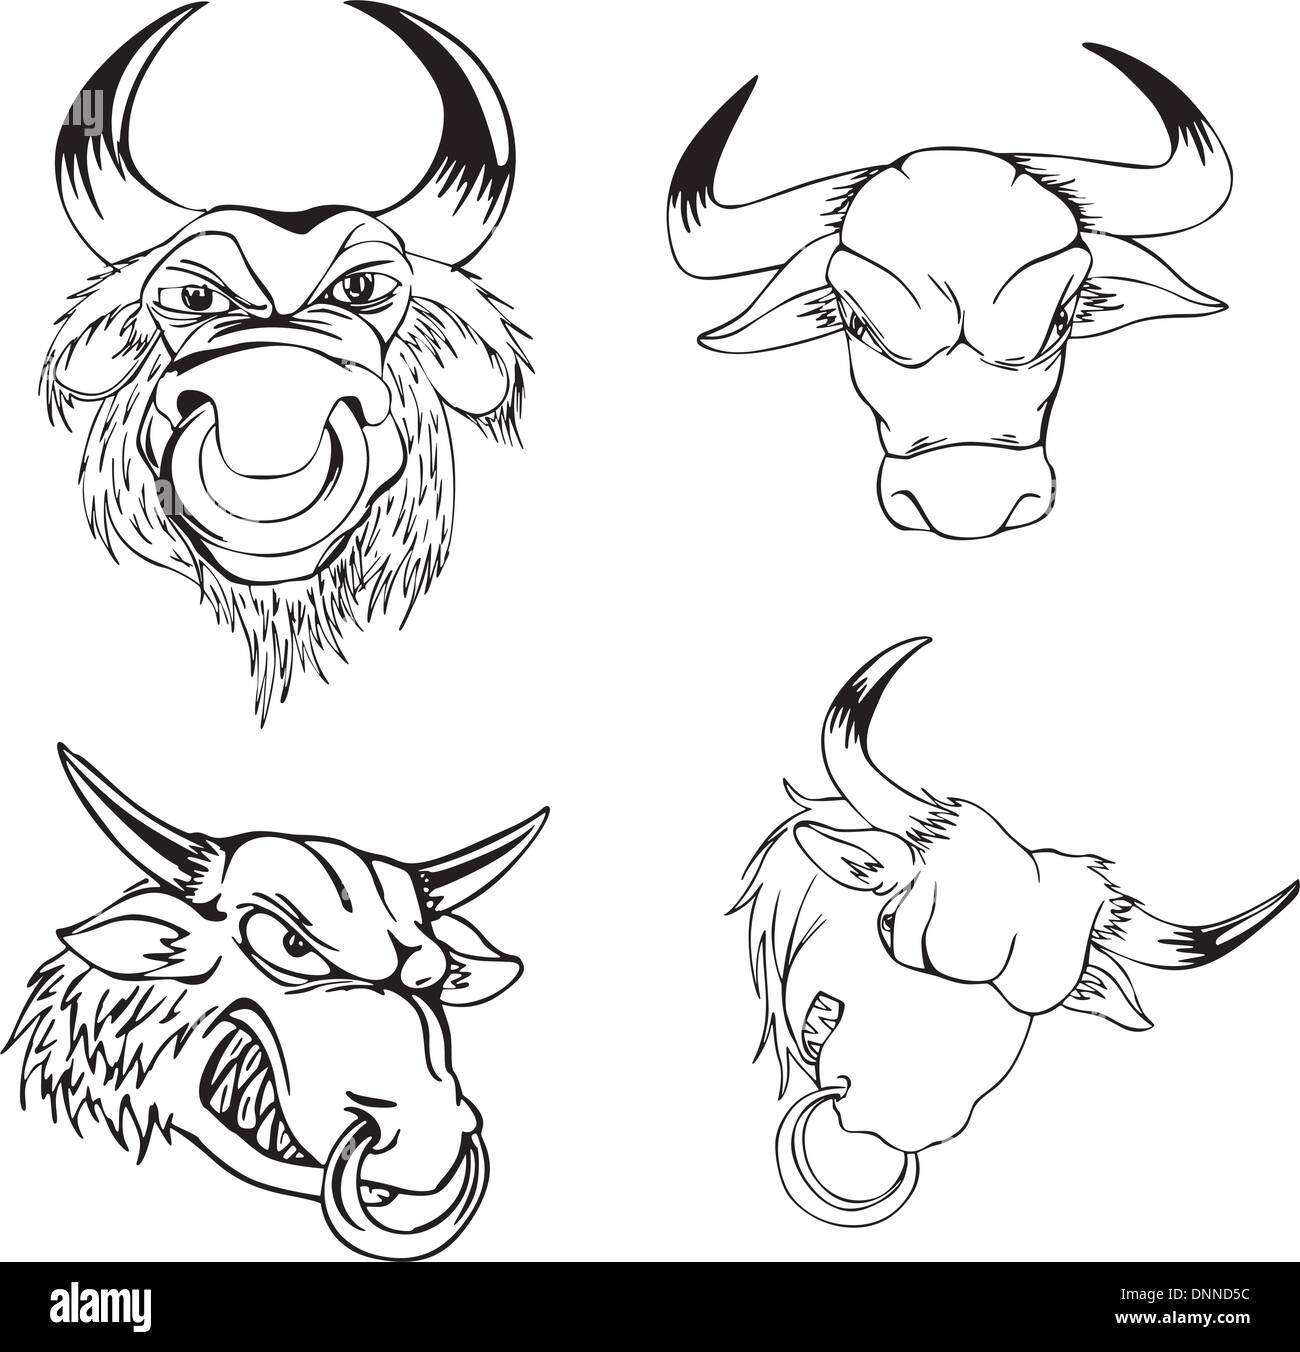 Aggressive Bull Köpfe. Satz von schwarzen und weißen Vektor-Tattoo-Designs. Stock Vektor